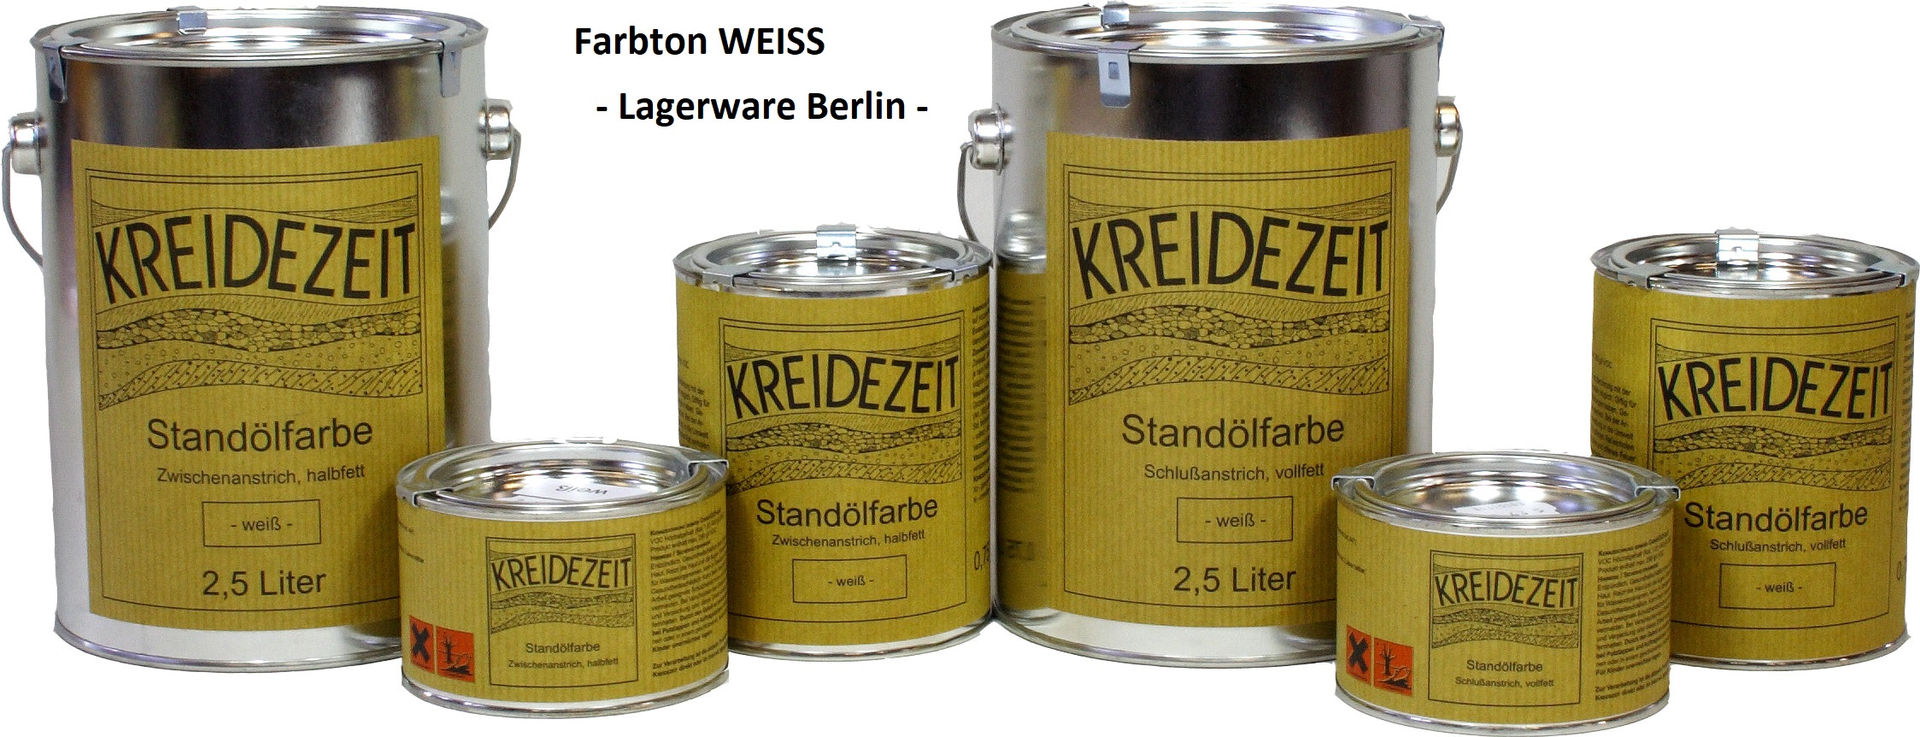 Kreidezeit Standölfarbe weiß - Ladenware Berlin Bild 1